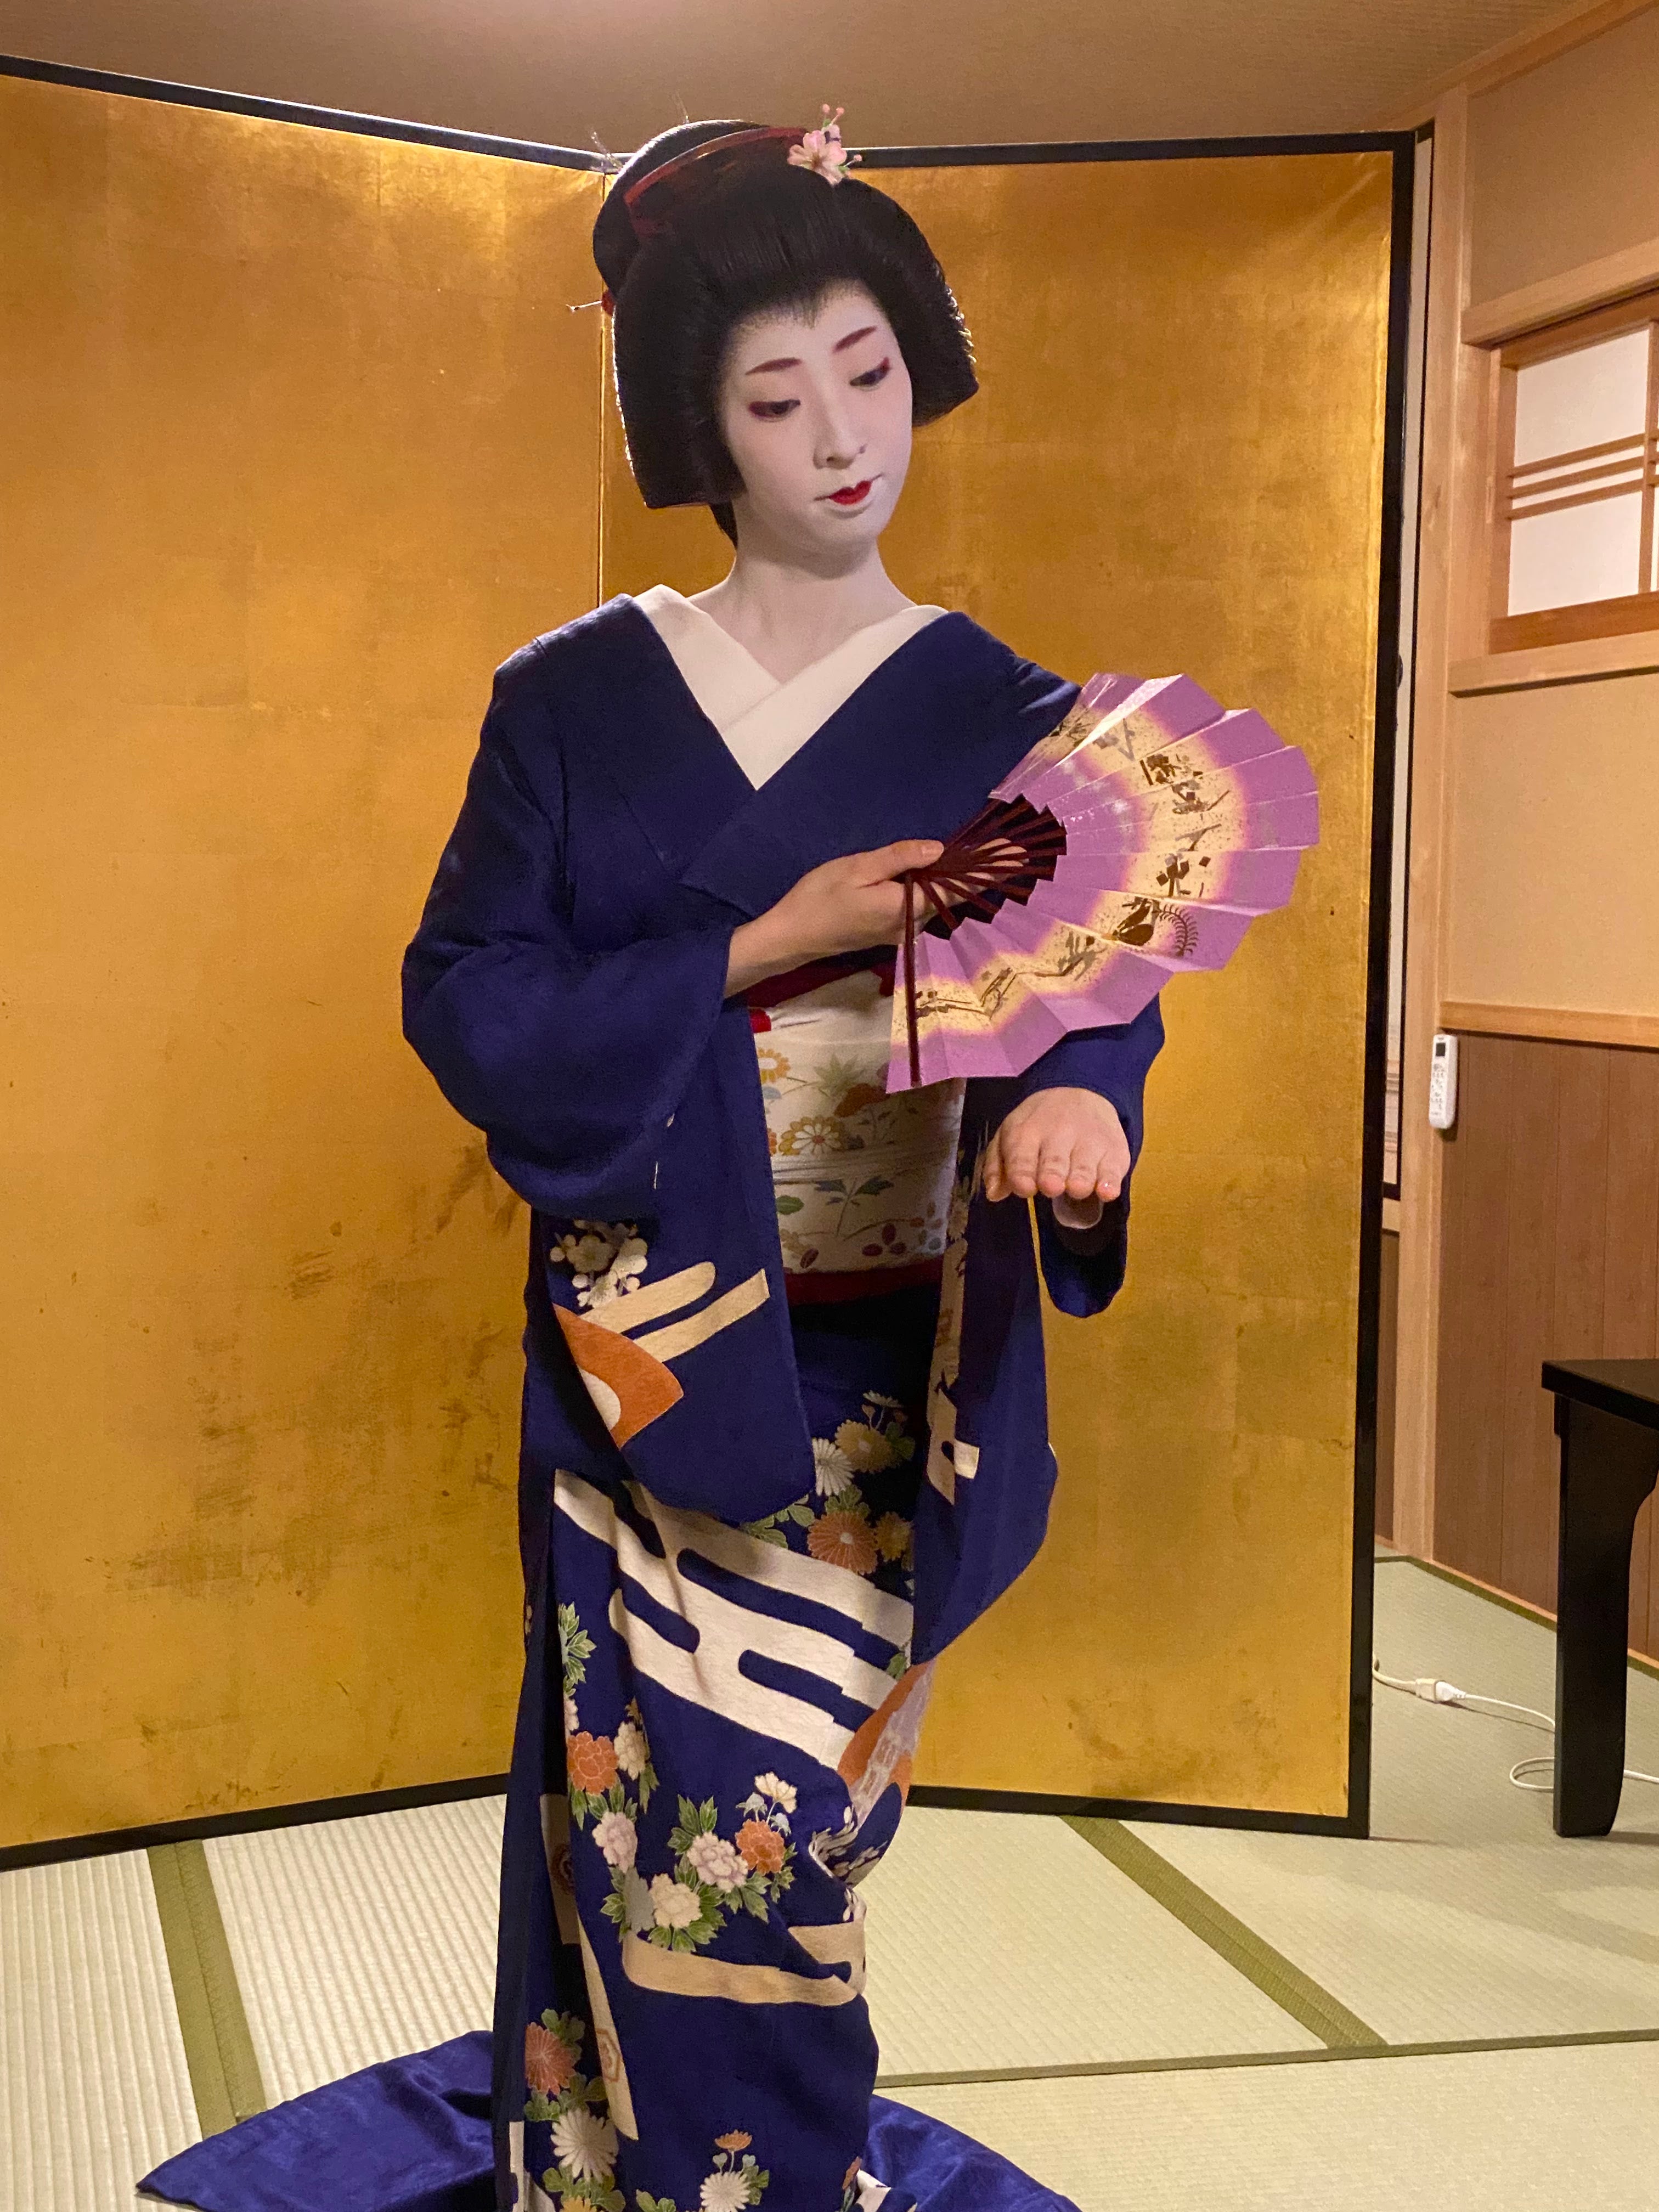 Dine with the Geisha